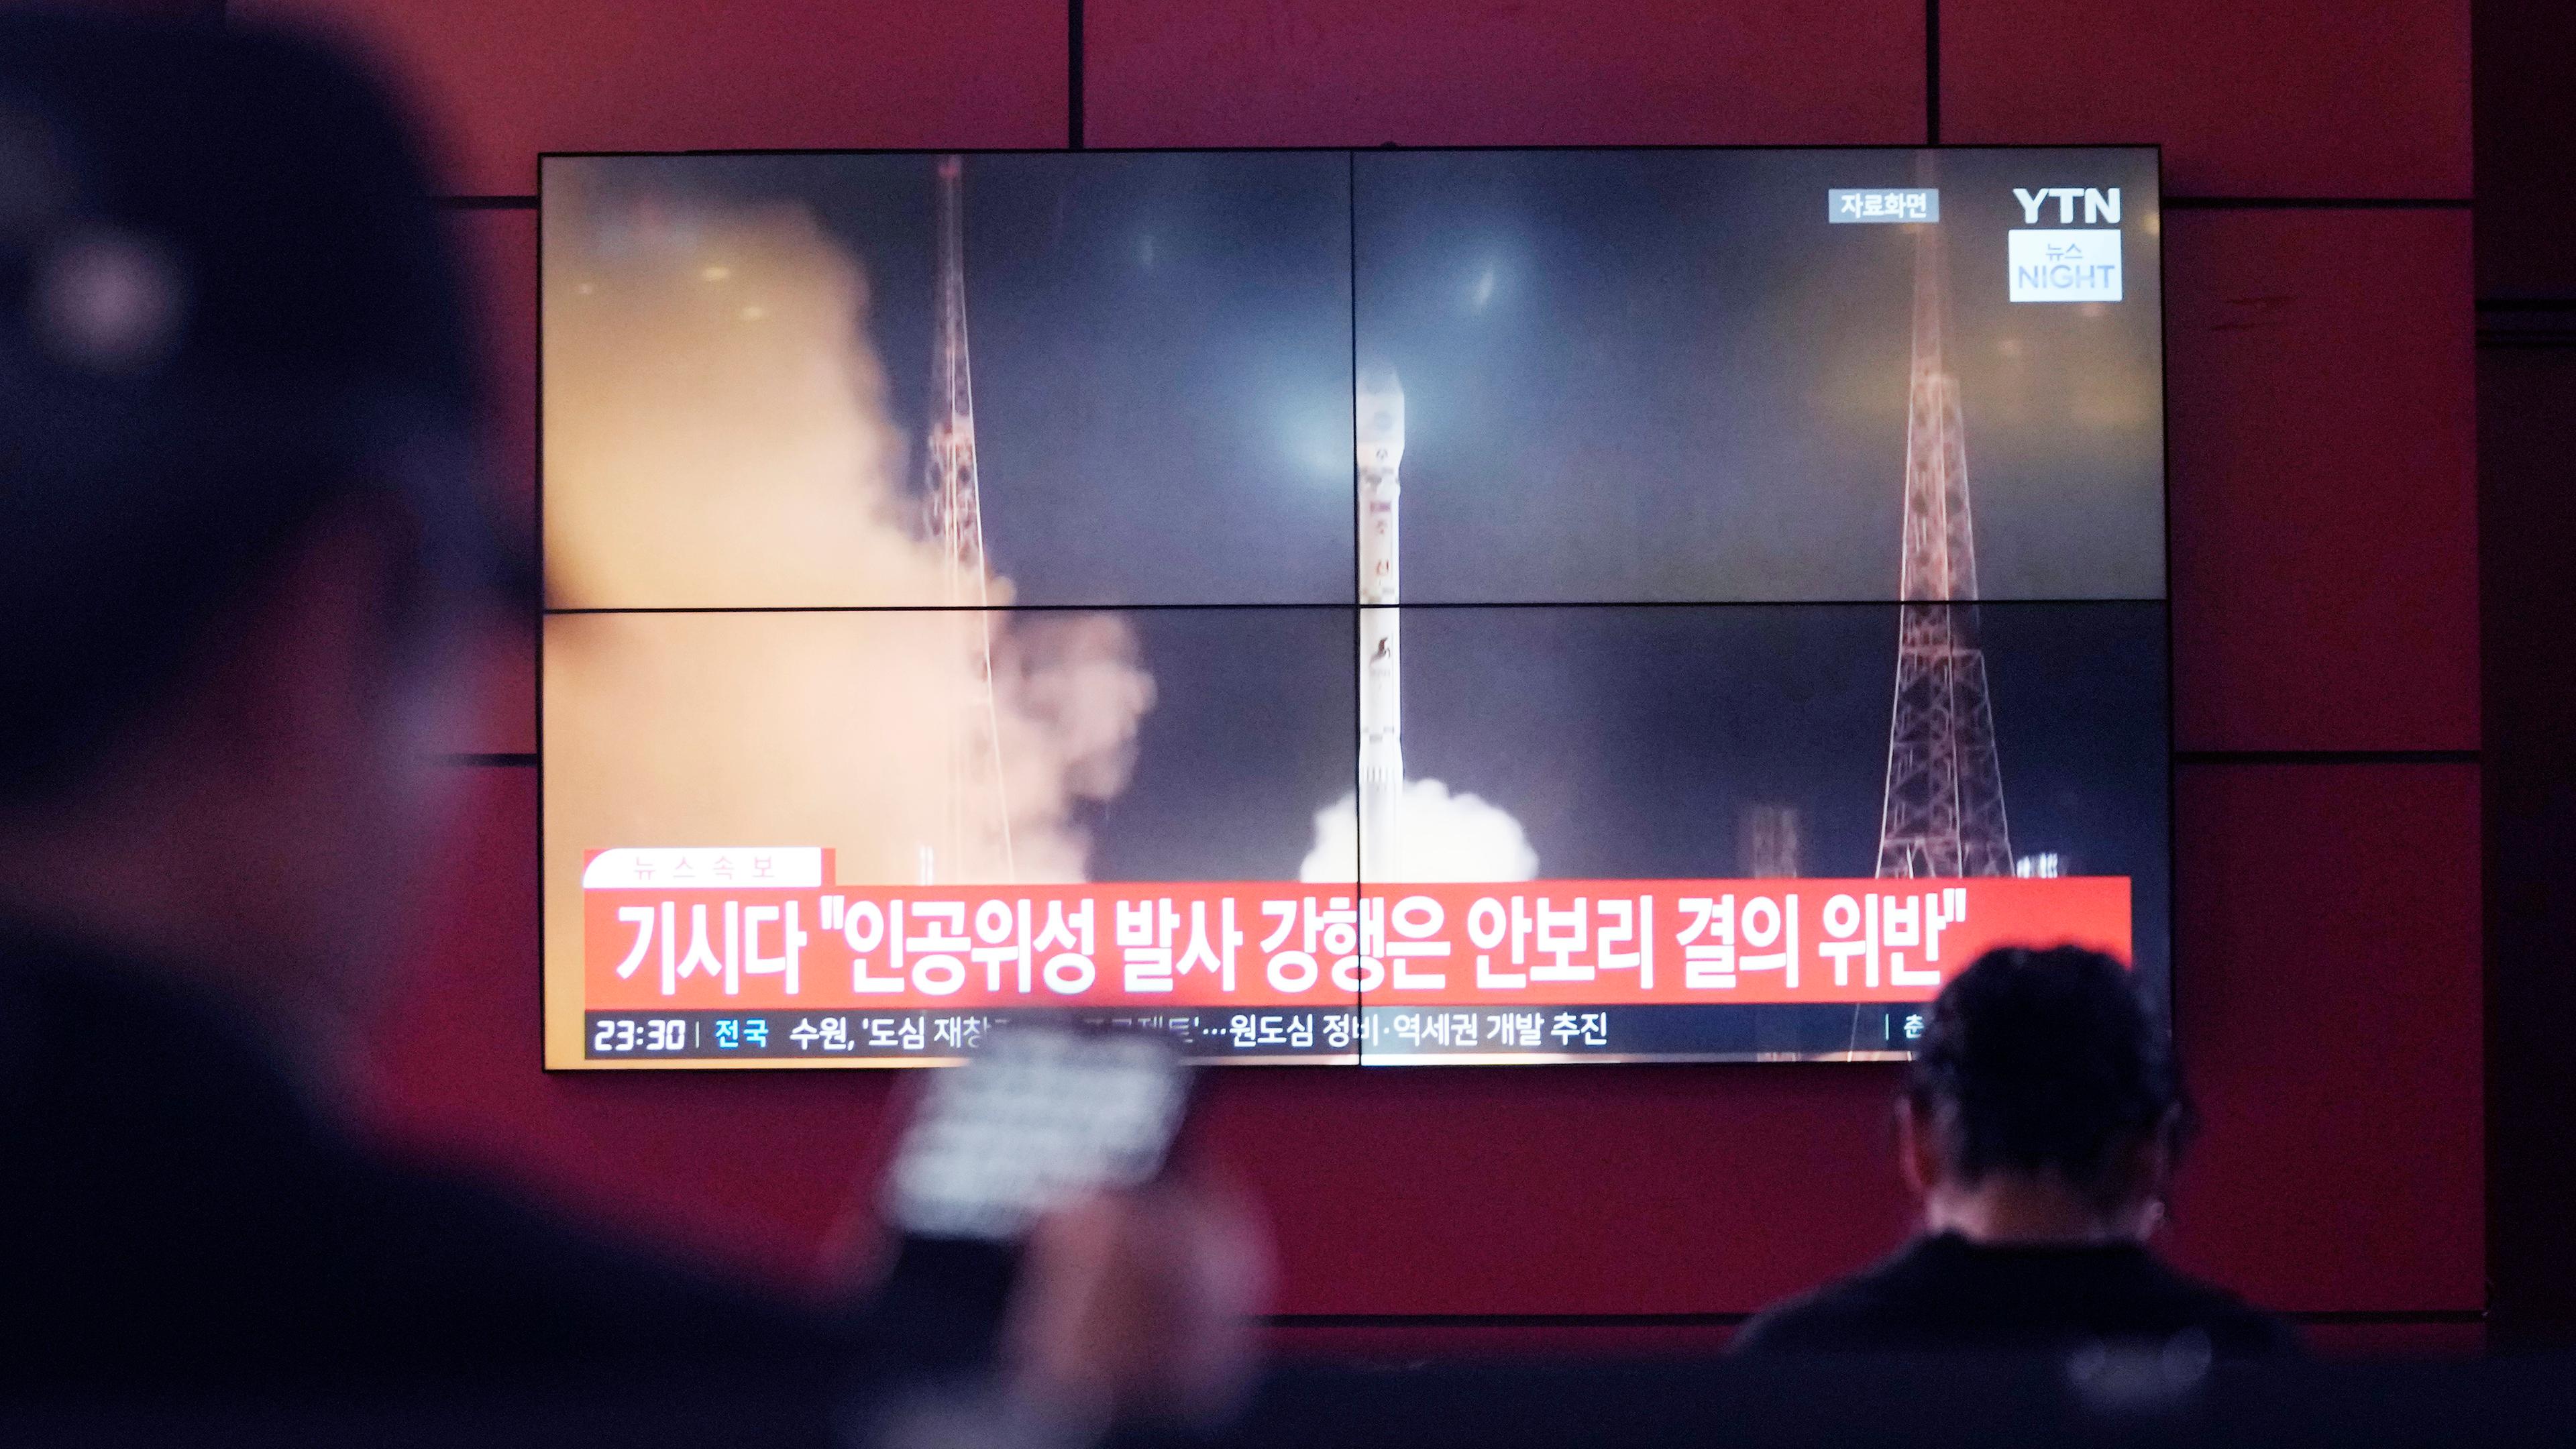 Südkorea, Seoul: Auf einem Fernsehbildschirm in einem Busbahnhof in Seoul ist ein Archivbild eines nordkoreanischen Raketenstarts während einer Nachrichtensendung zu sehen.